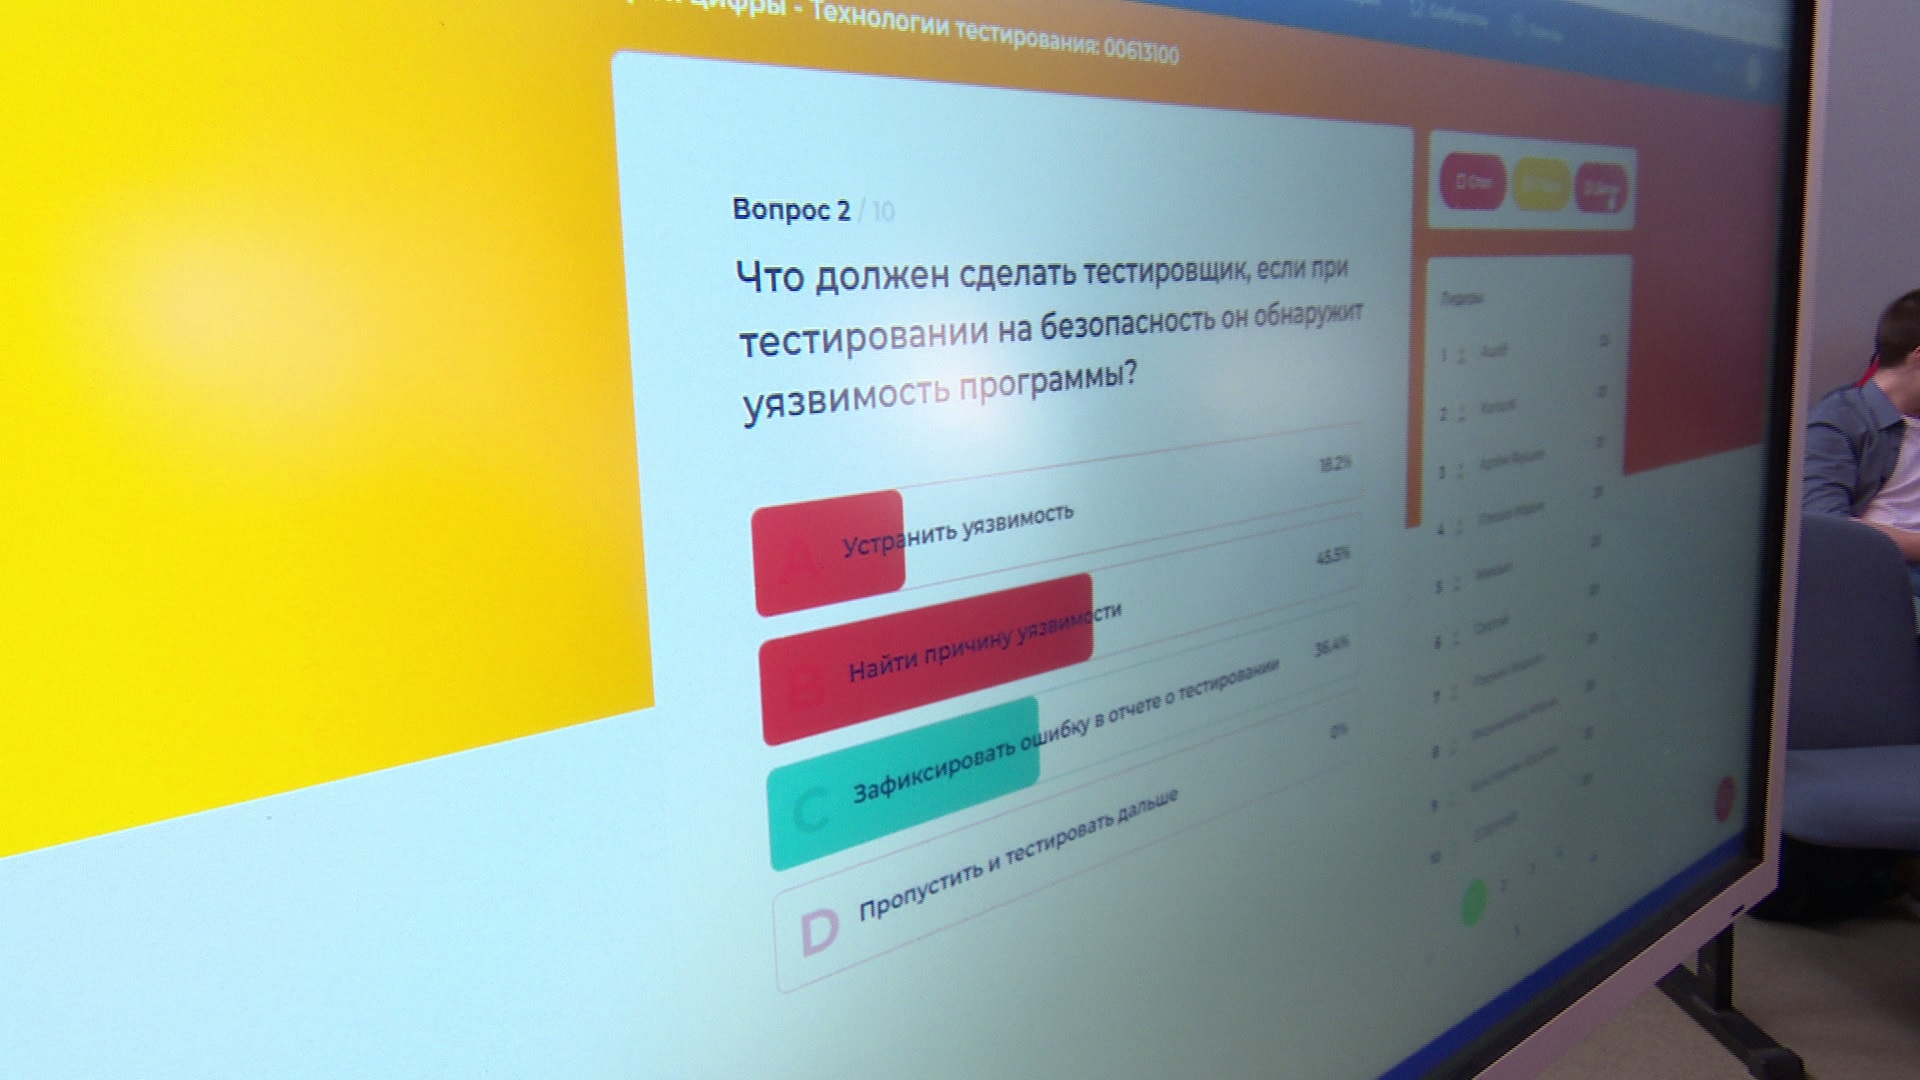 О профессии тестировщика приложений расскажут школьникам Челябинска на "Уроке цифры"